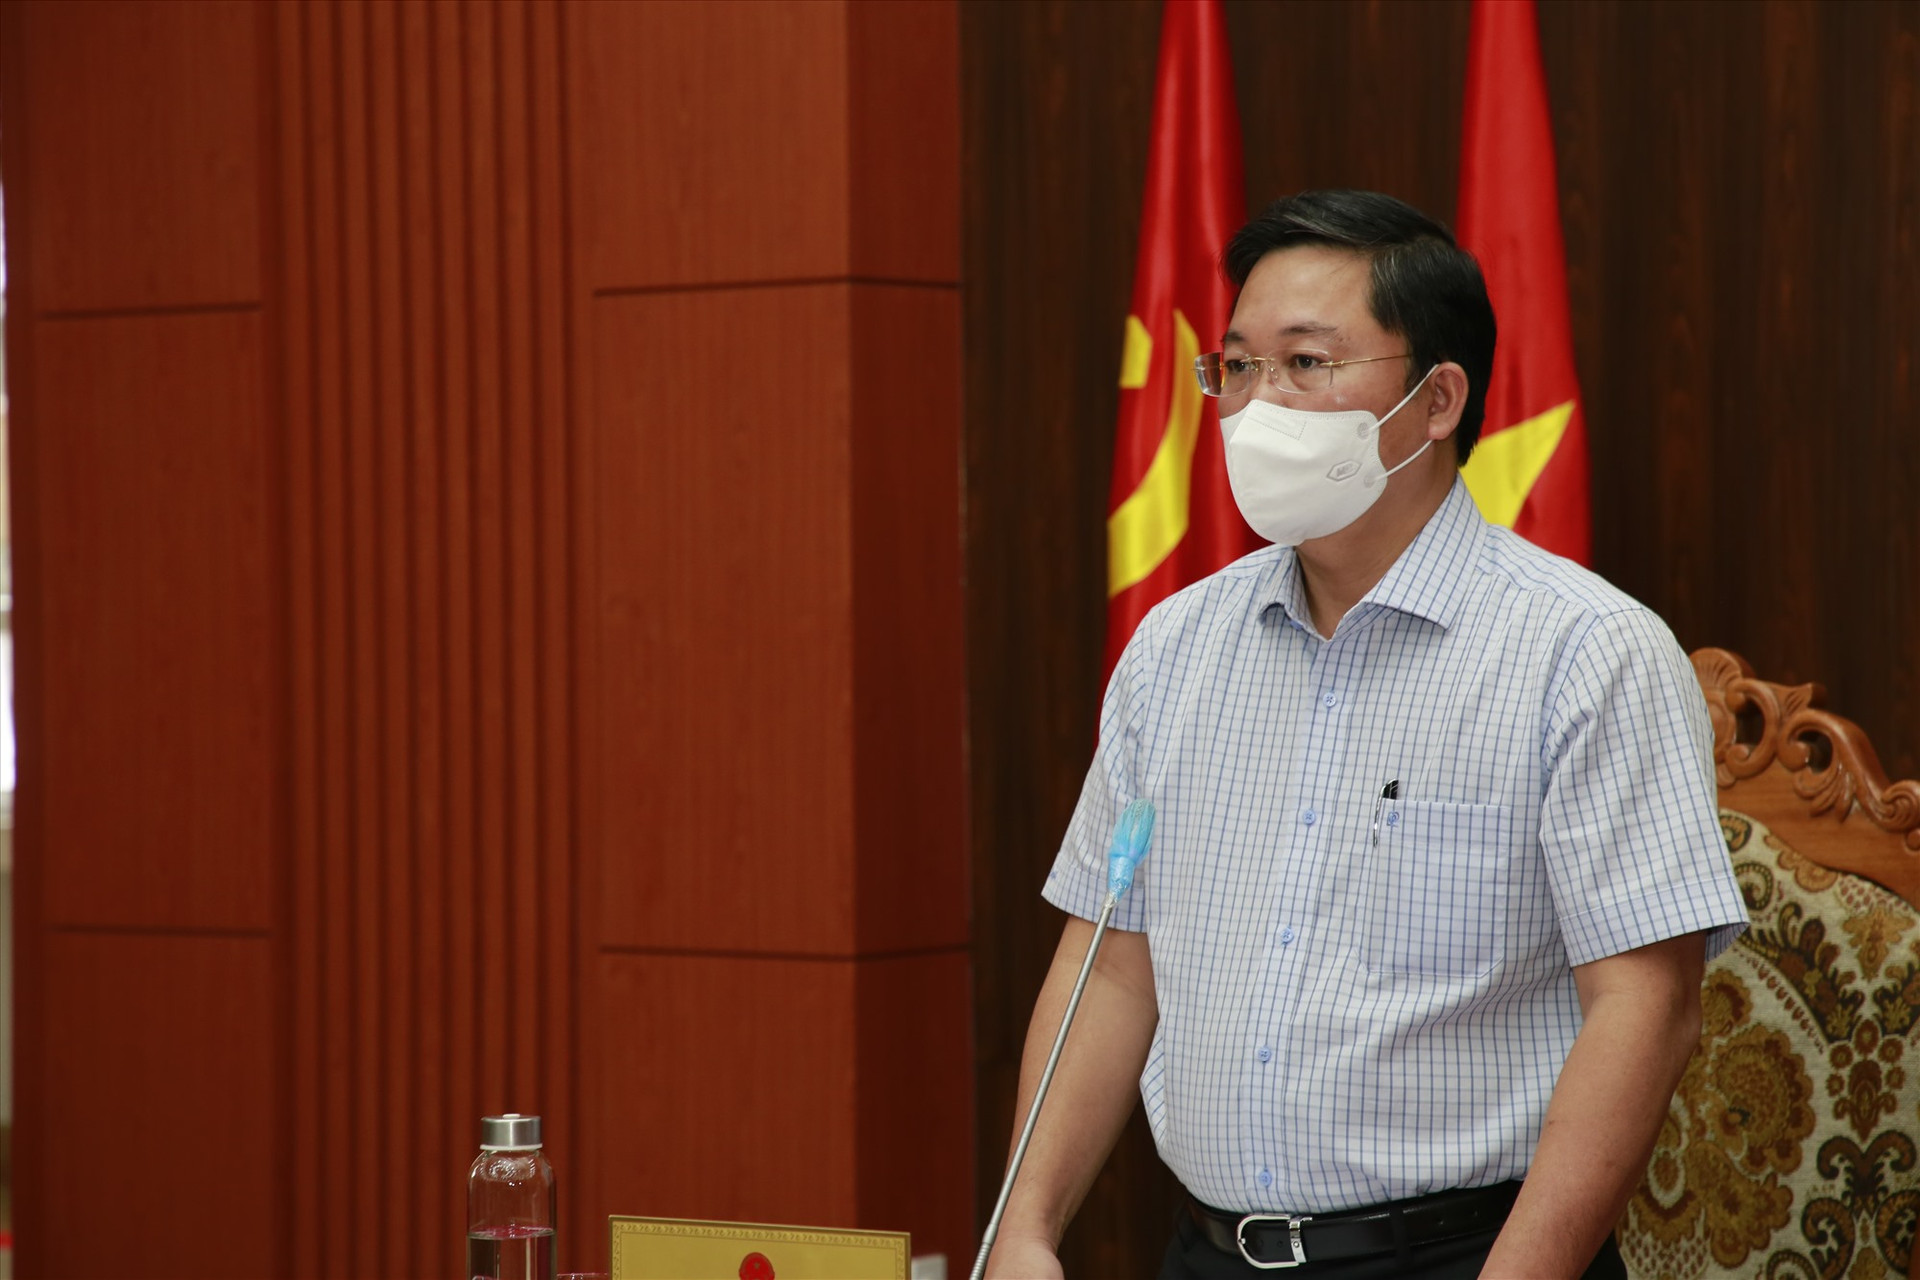 Chủ tịch UBND tỉnh Lê Trí Thanh yêu cầu các ban ngành, địa phương khẩn trương có những giải pháp cụ thể để đảm bảo an toàn vận tải hành khách đường thủy nội địa, nhất là tuyến Cửa Đại - Cù Lao Chàm.